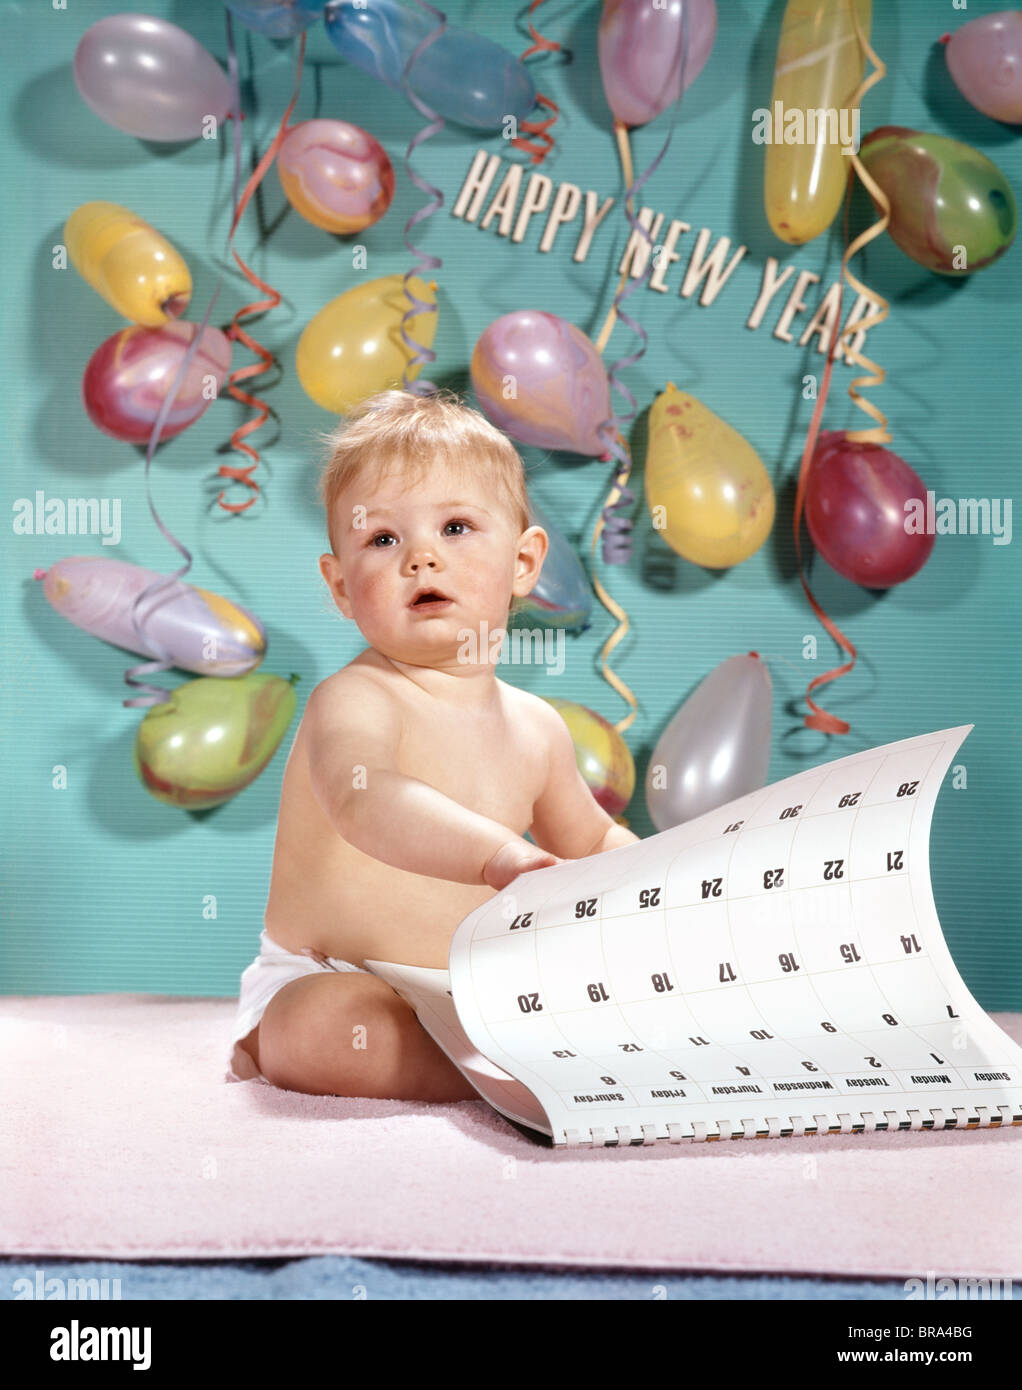 Bébé de nouvel an Banque de photographies et d'images à haute résolution -  Alamy